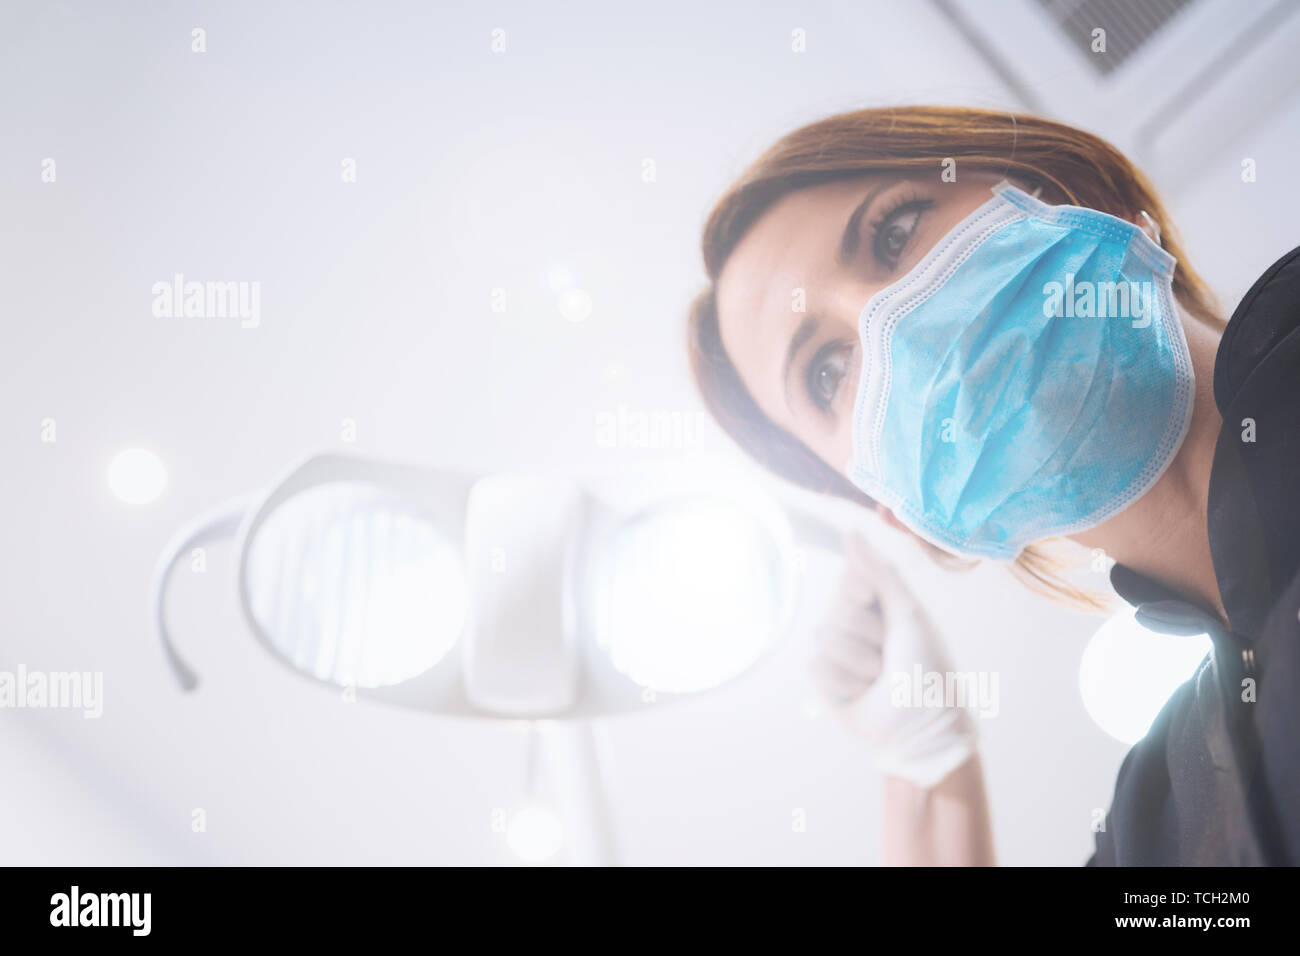 Vue de dessous de deux femmes dentistes dans le masque chirurgical et outils de maintien à l'appareil photo à. Point de vue du patient au dentiste. Banque D'Images